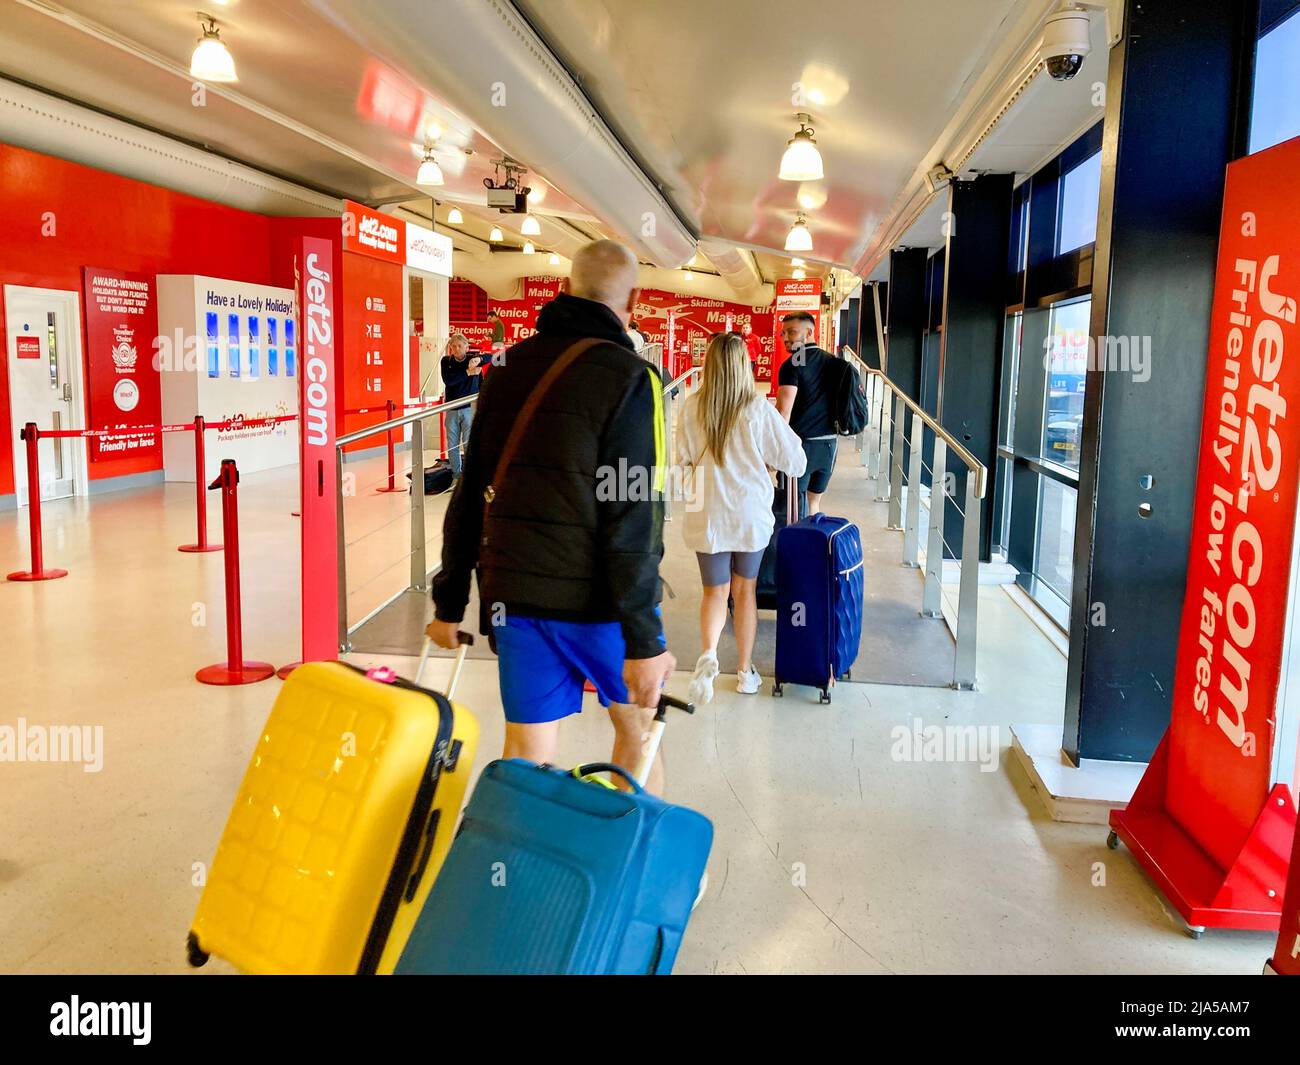 Les voyageurs arrivent avec leurs valises au terminal des départs de l'aéroport de Leeds Bradford pour leurs vacances. Les passagers marchent pour enregistrer leurs bagages. Banque D'Images